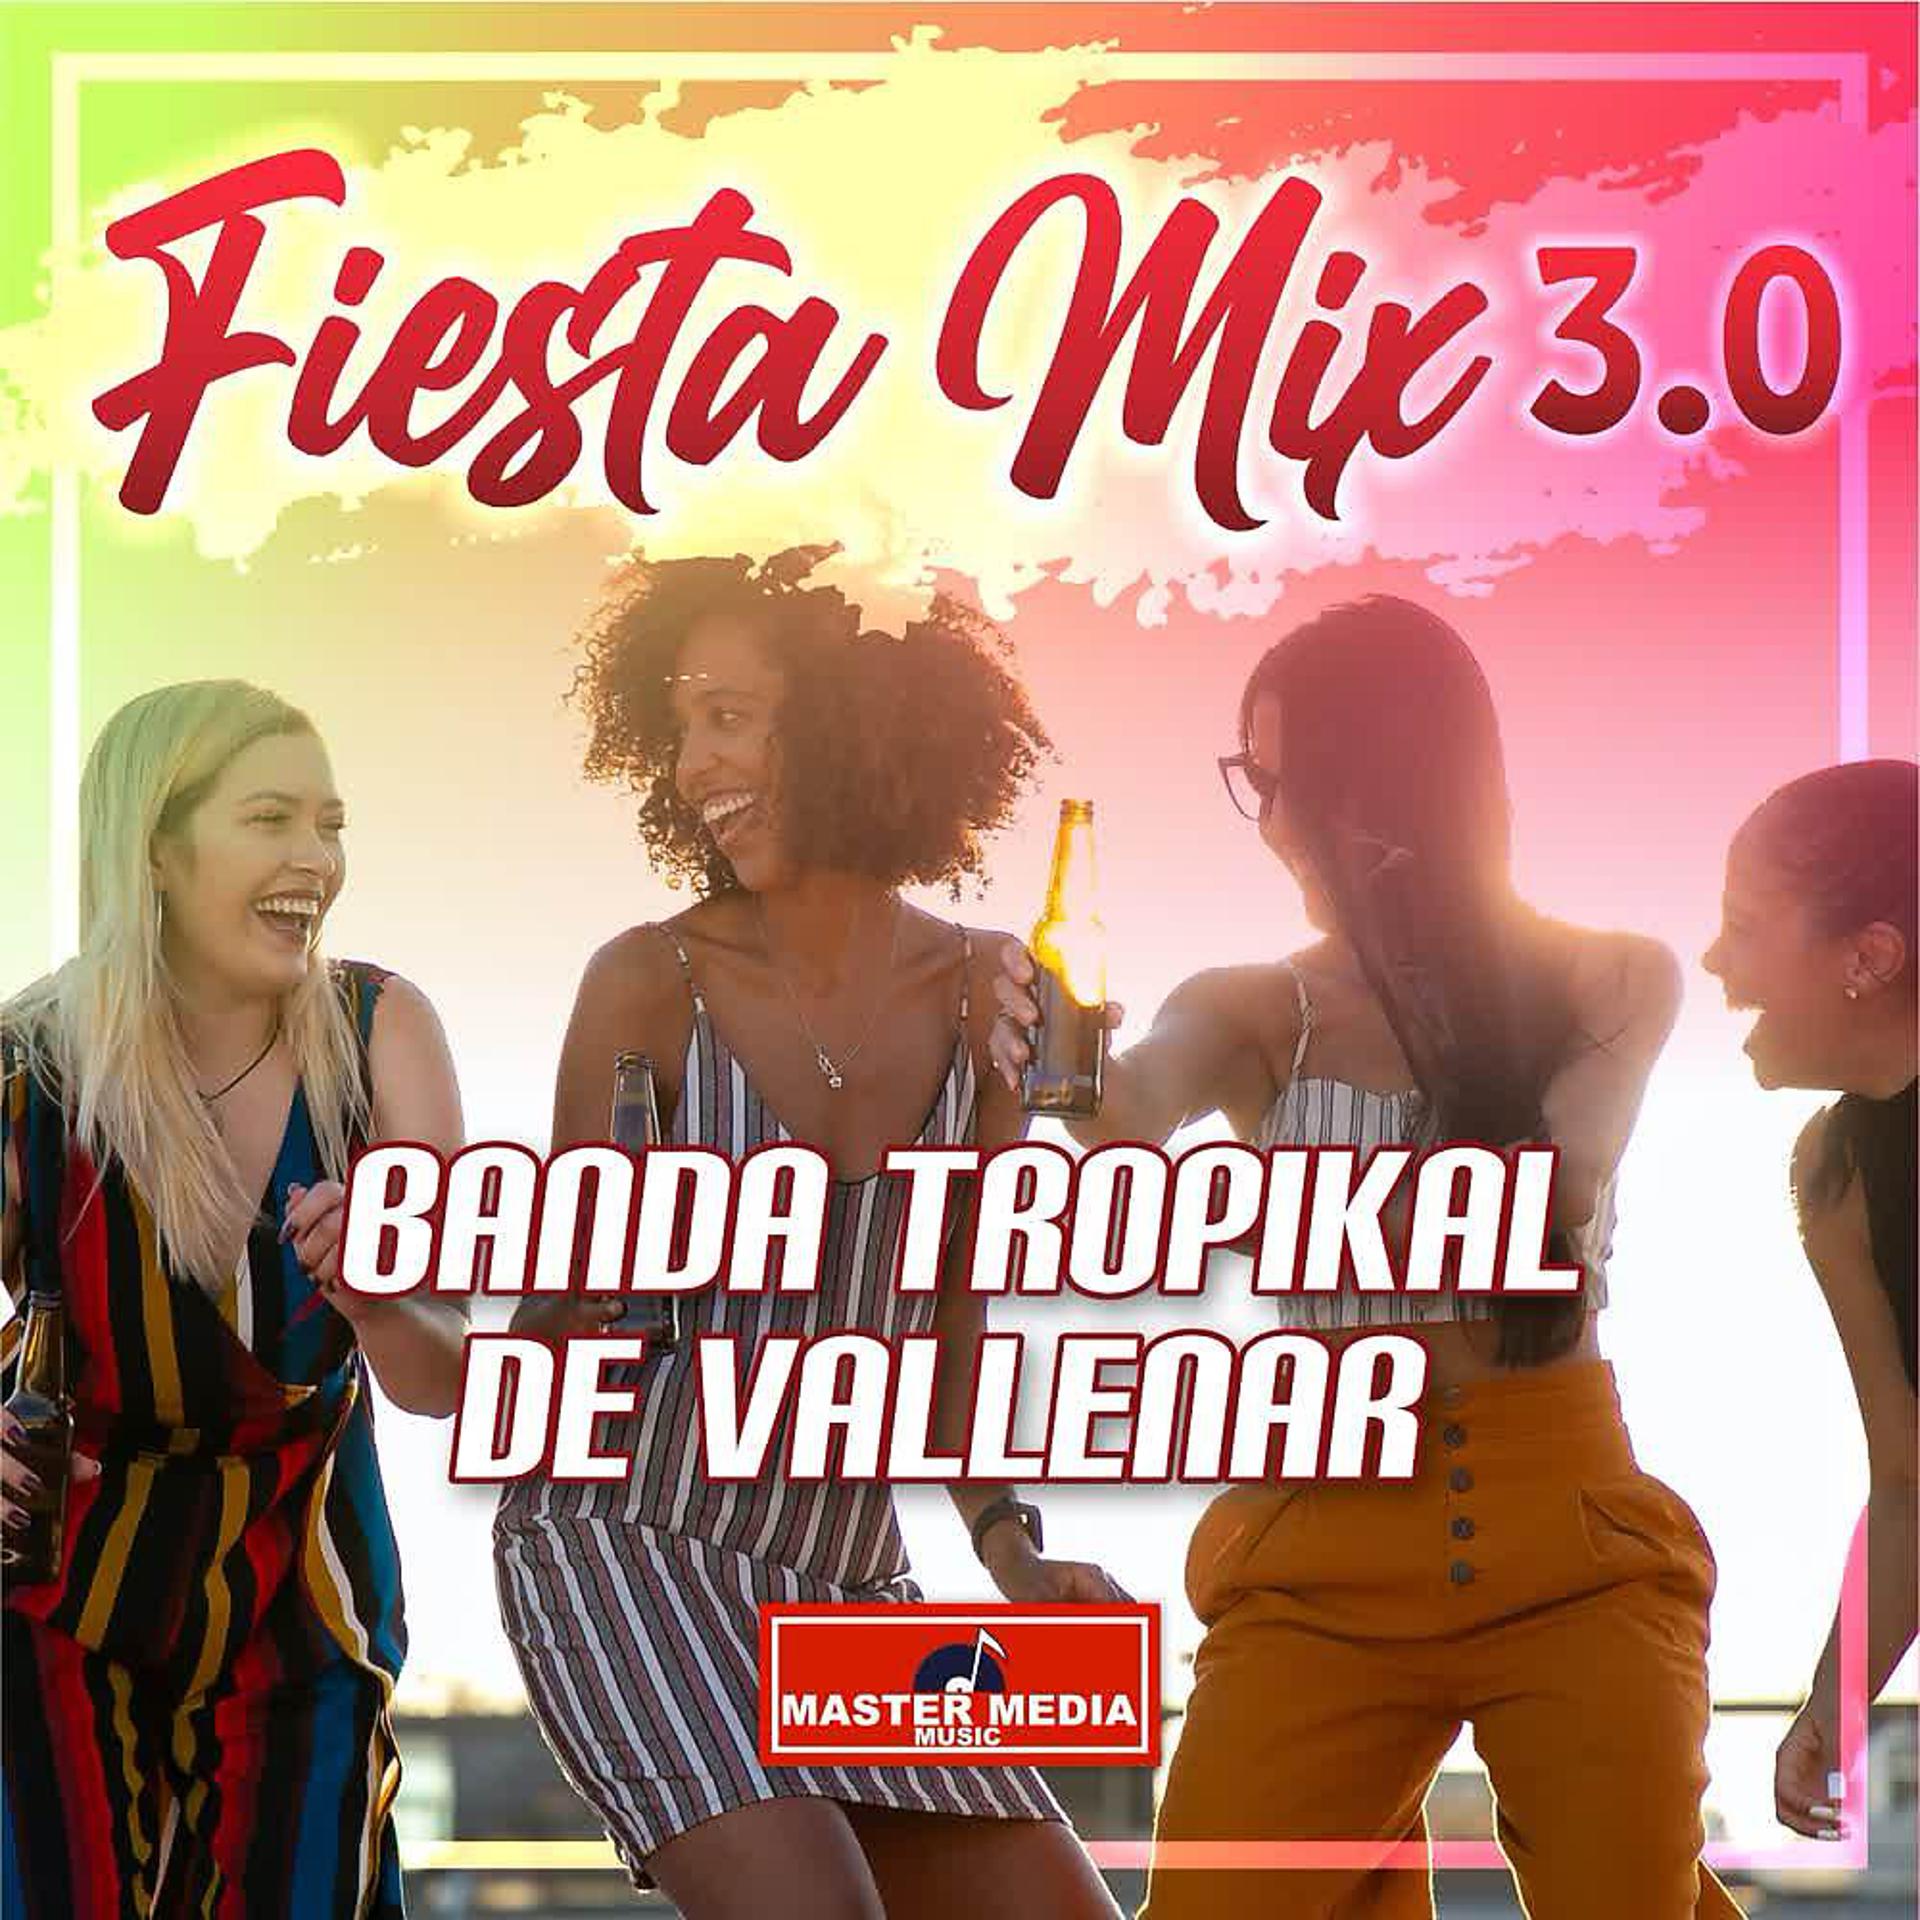 Постер альбома Fiesta Mix 3.0 Banda Tropikal de Vallenar: Te He Ptometido / el Amor y la Felicidad / Tu Me Pides Que Te Olvide / Morena de Mis Amores / la Reina del Espacio / las Flores de Tu Florero